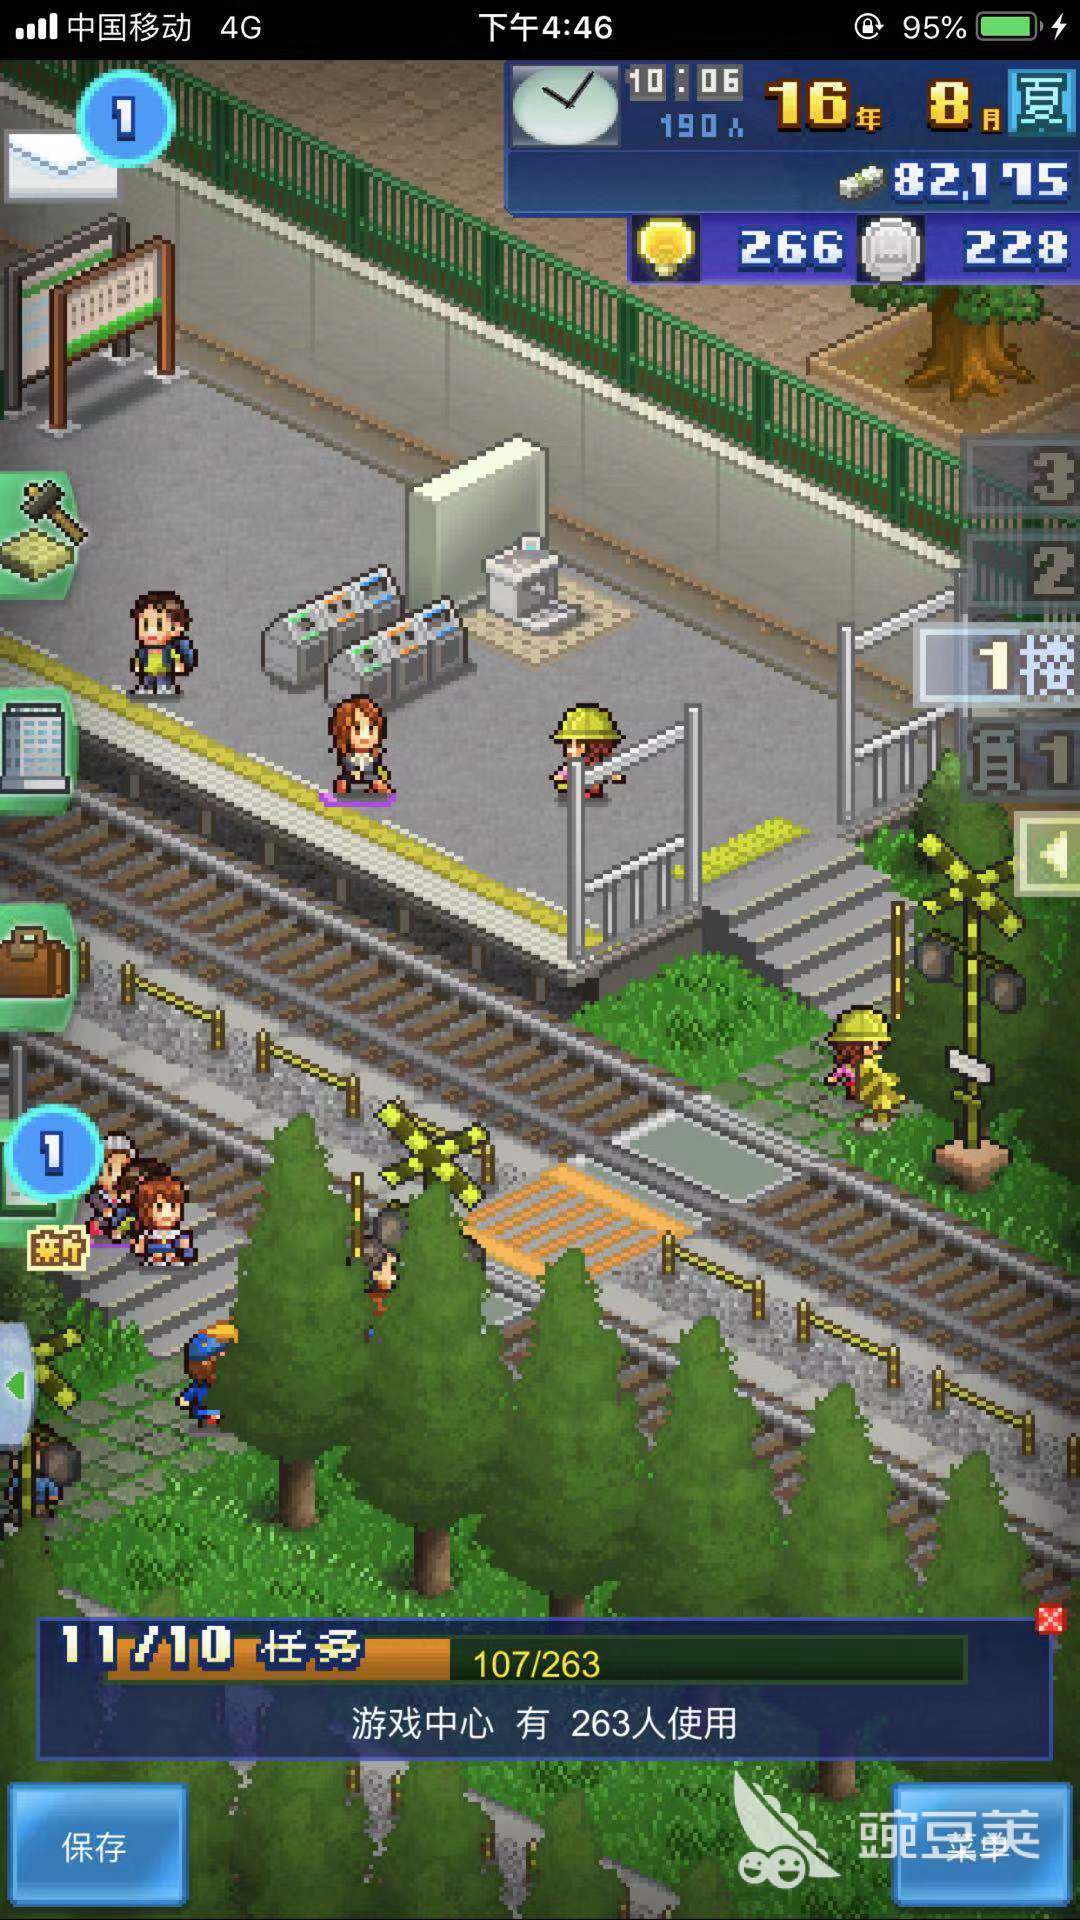 地铁的特点 箱庭铁道物语地铁之间怎么连接